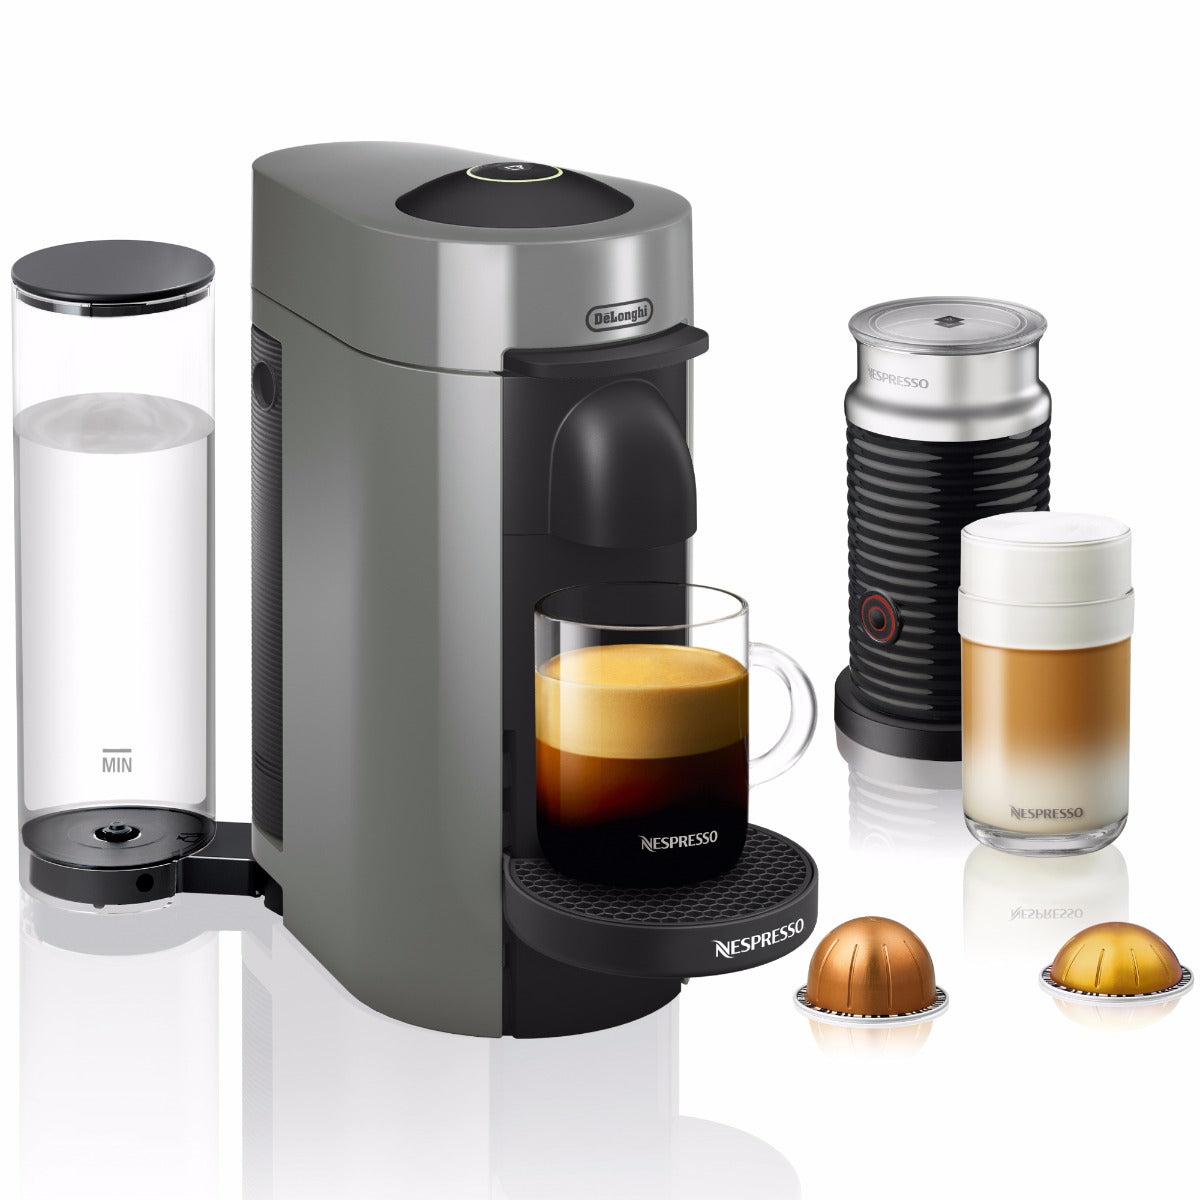 Nespresso Vertuo Espresso Machine by DeLonghi - Titan – Whole Latte Love